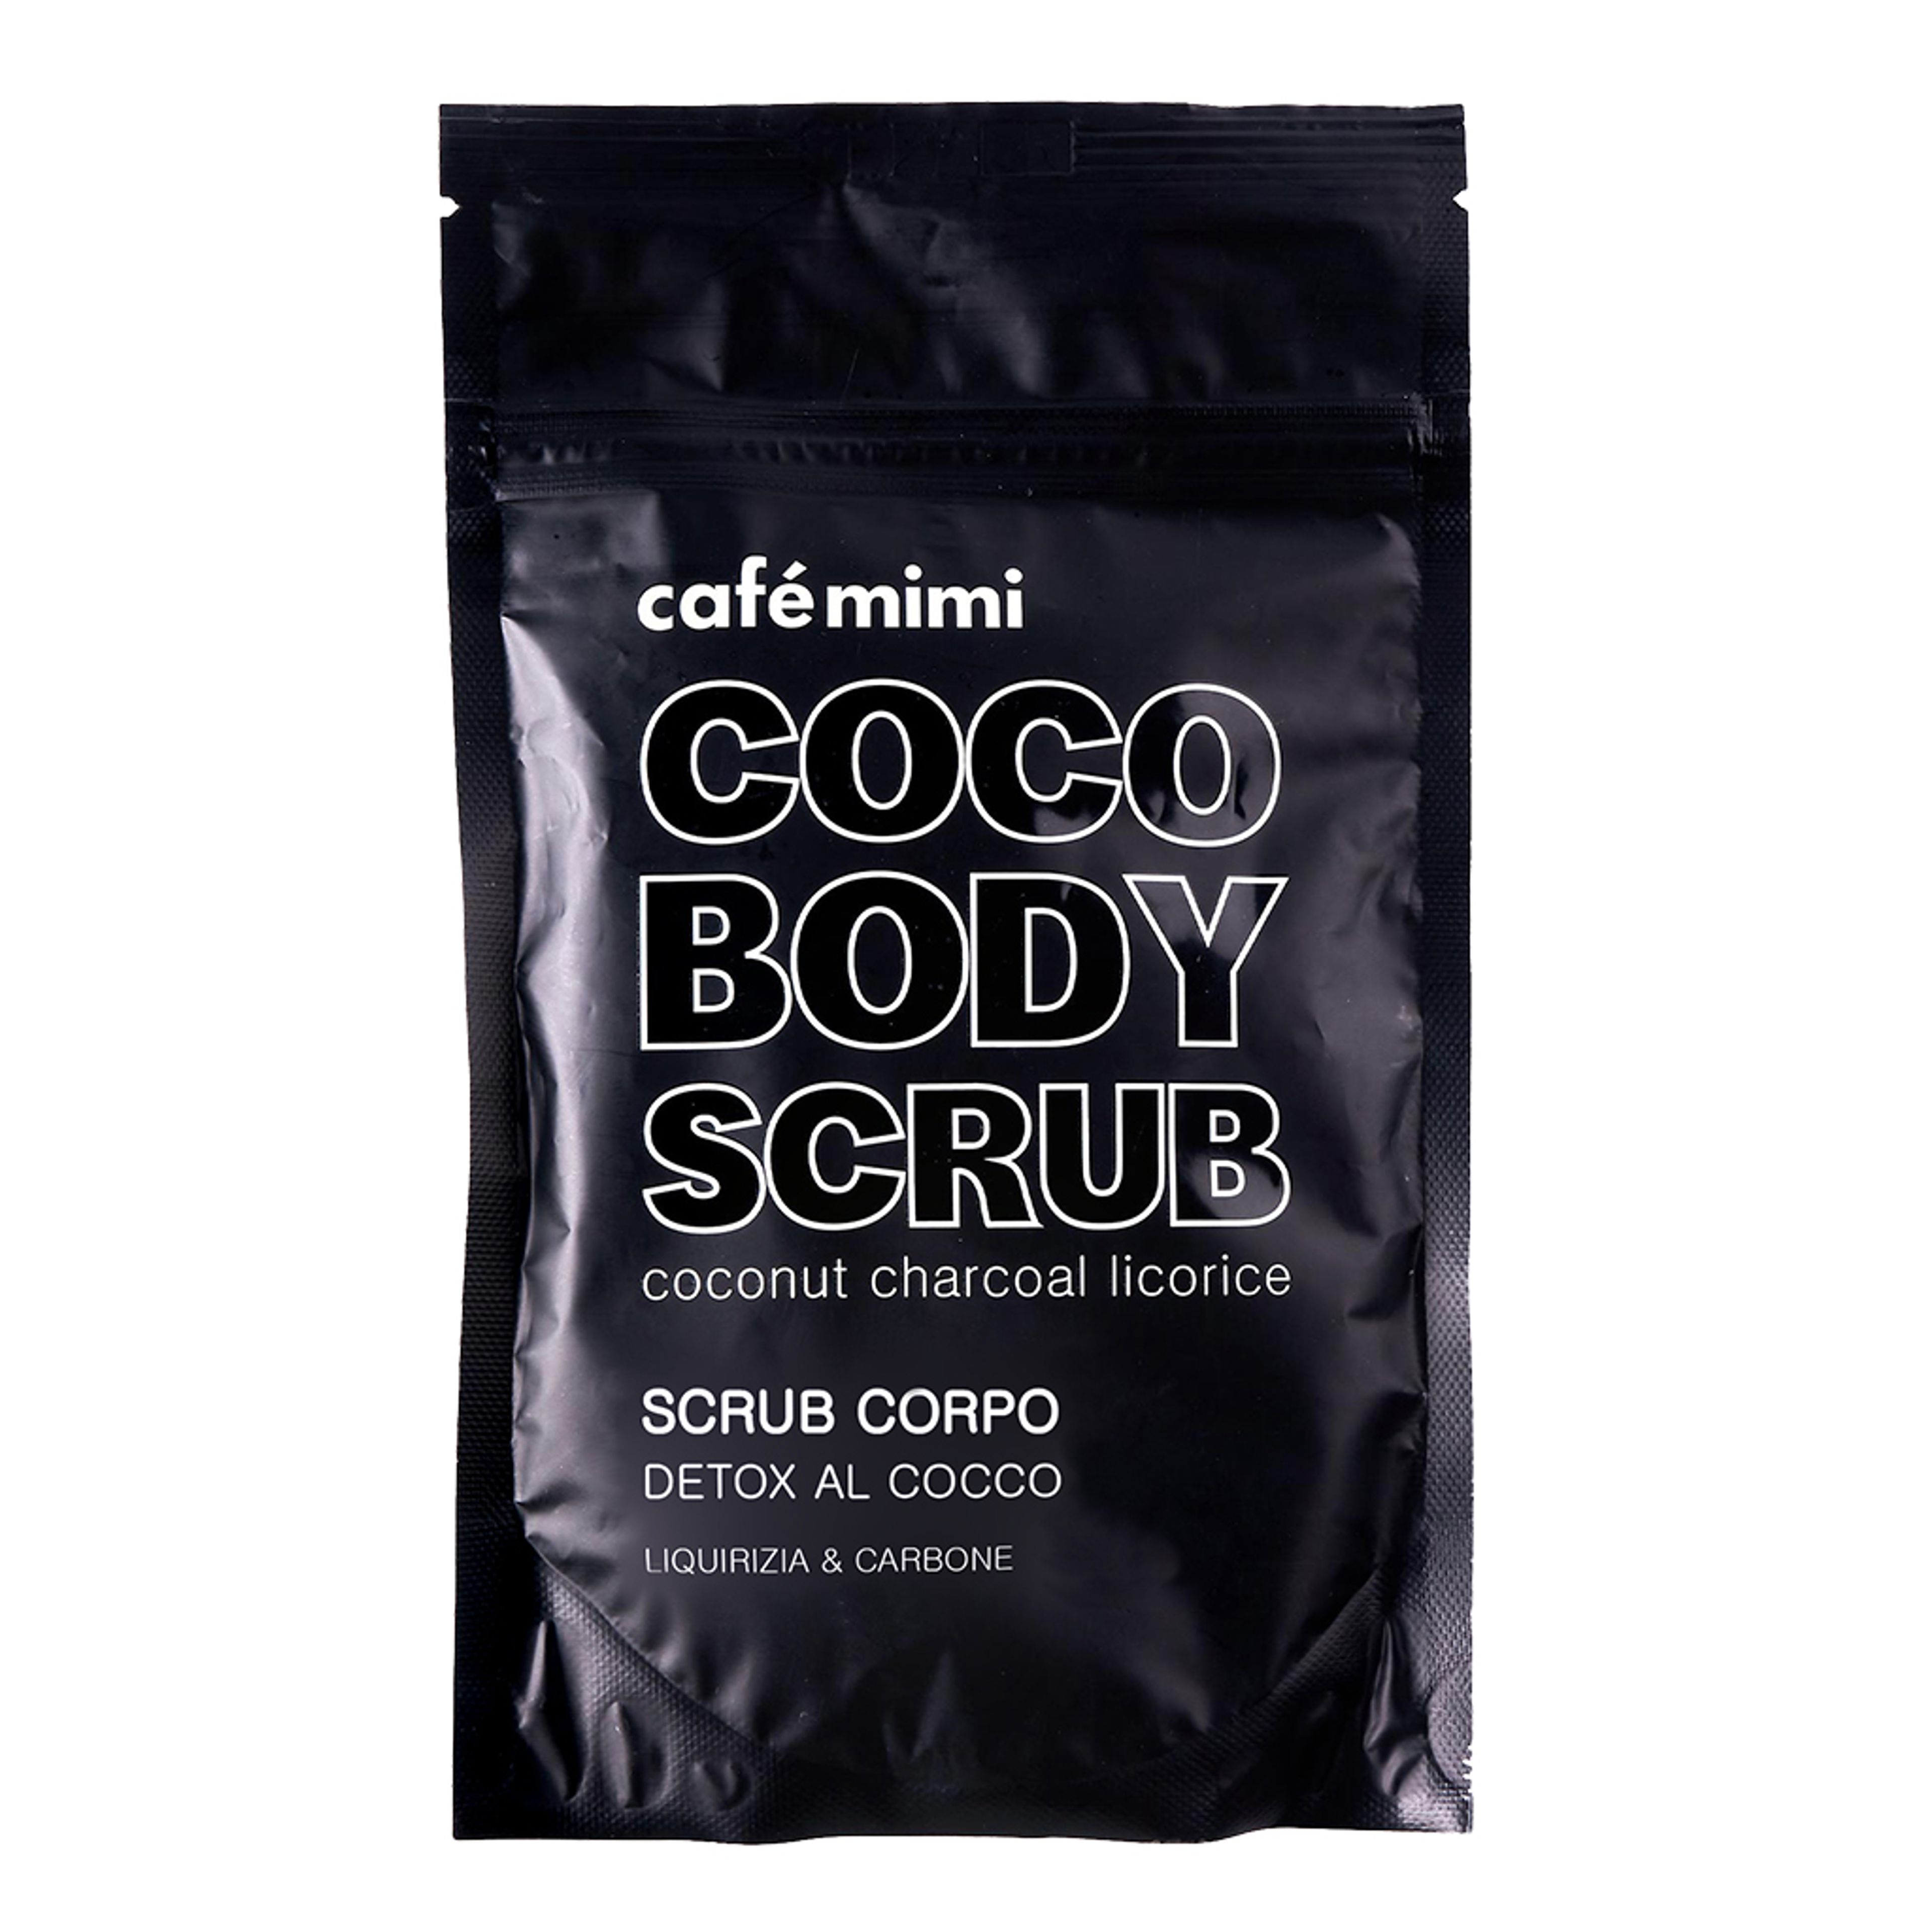 Café Mimi Scrub Corpo Detox Al Cocco
liquirizia & Carbone 1